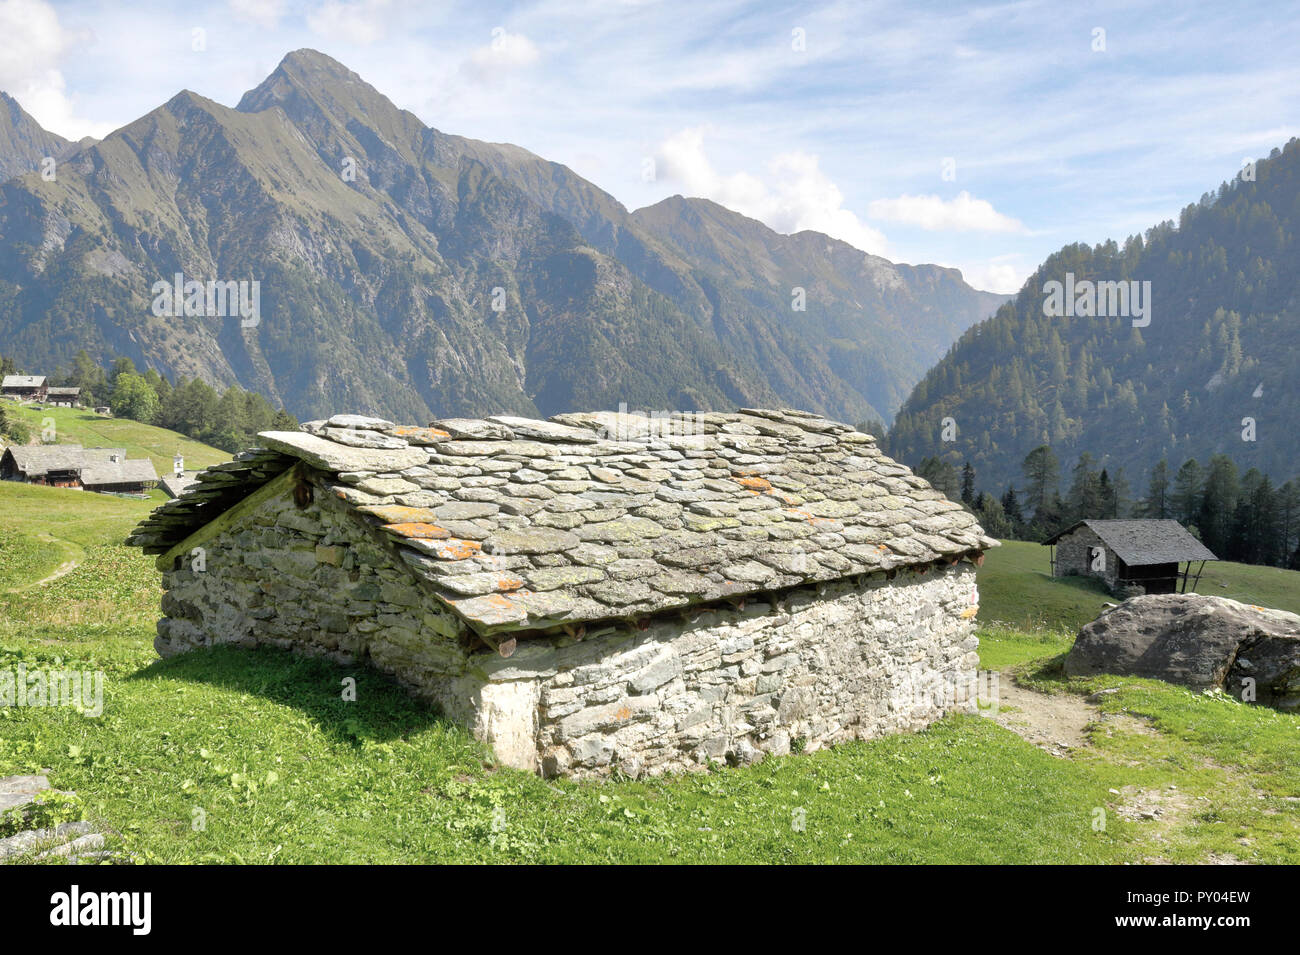 Une cabane en pierre dans la ville de Walser Follu, entre de hautes montagnes, forêts de pins et de verts pâturages, en été, dans le Val d'Otro vallée, Alpes, Italie Banque D'Images